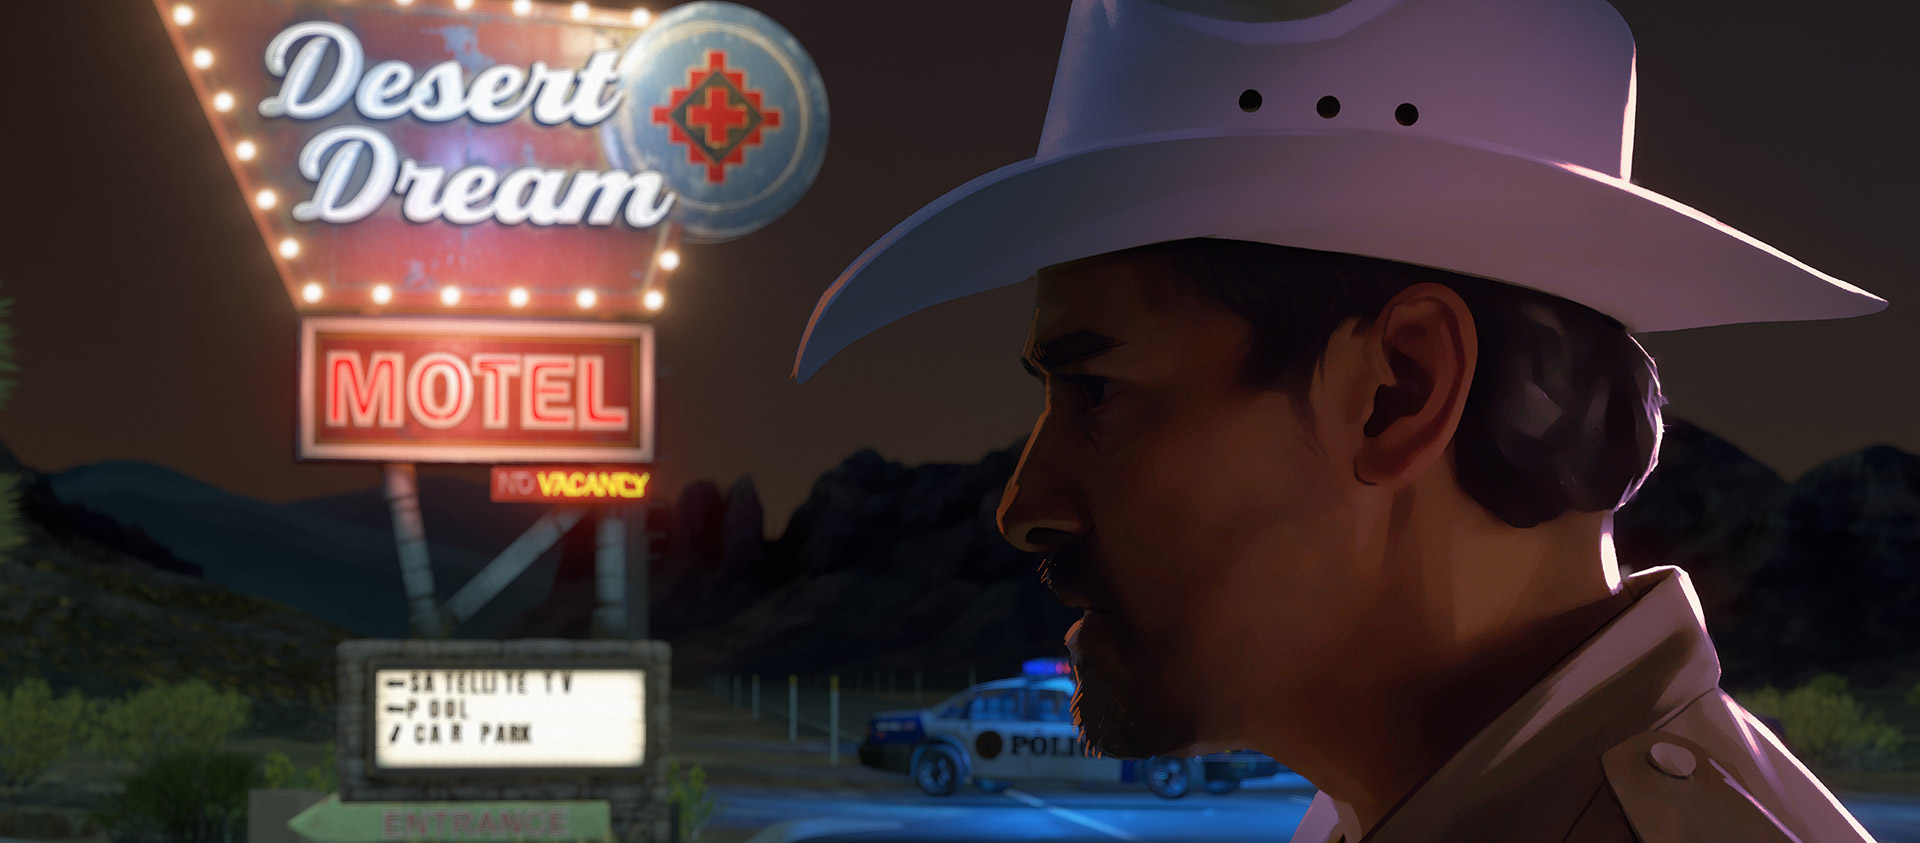 Stróż prawa w kowbojskim kapeluszu stoi pod neonowym znakiem motelu.